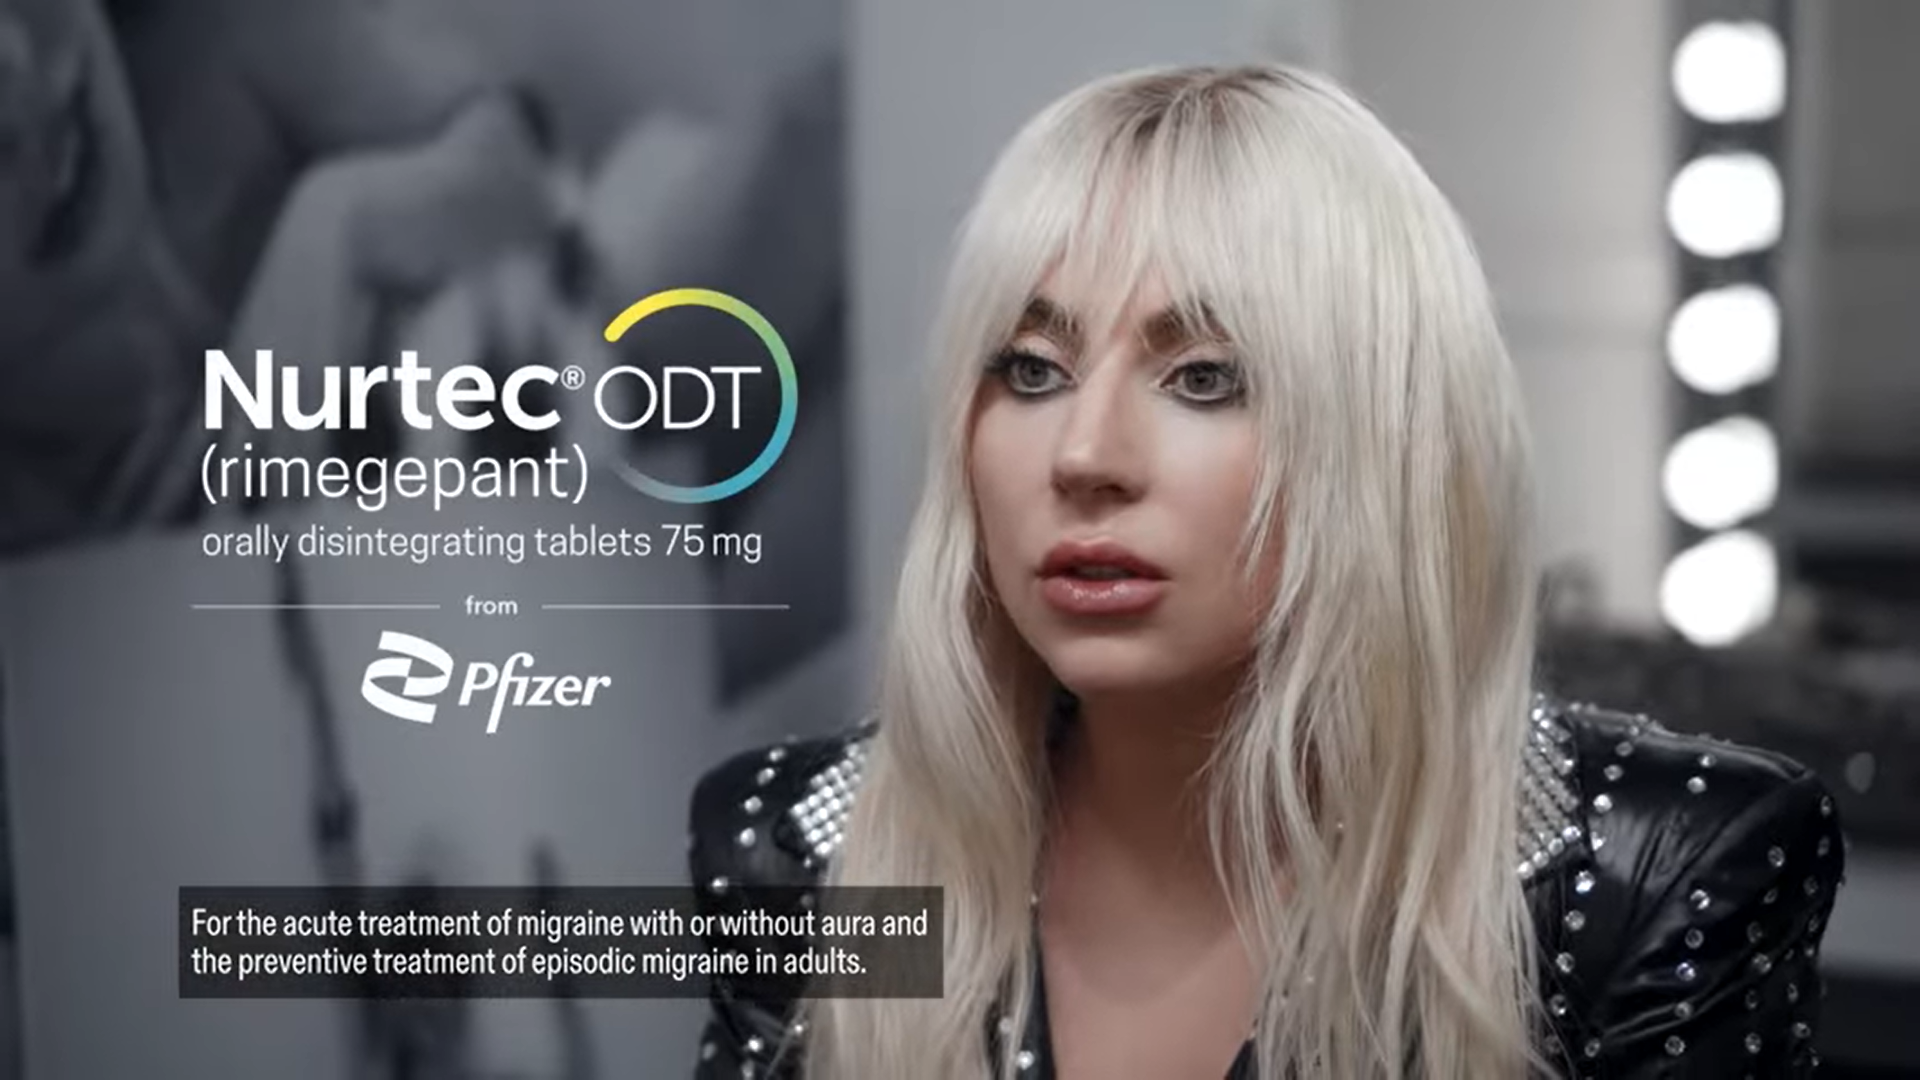 Lady Gaga Nurtec ODT Pfizer